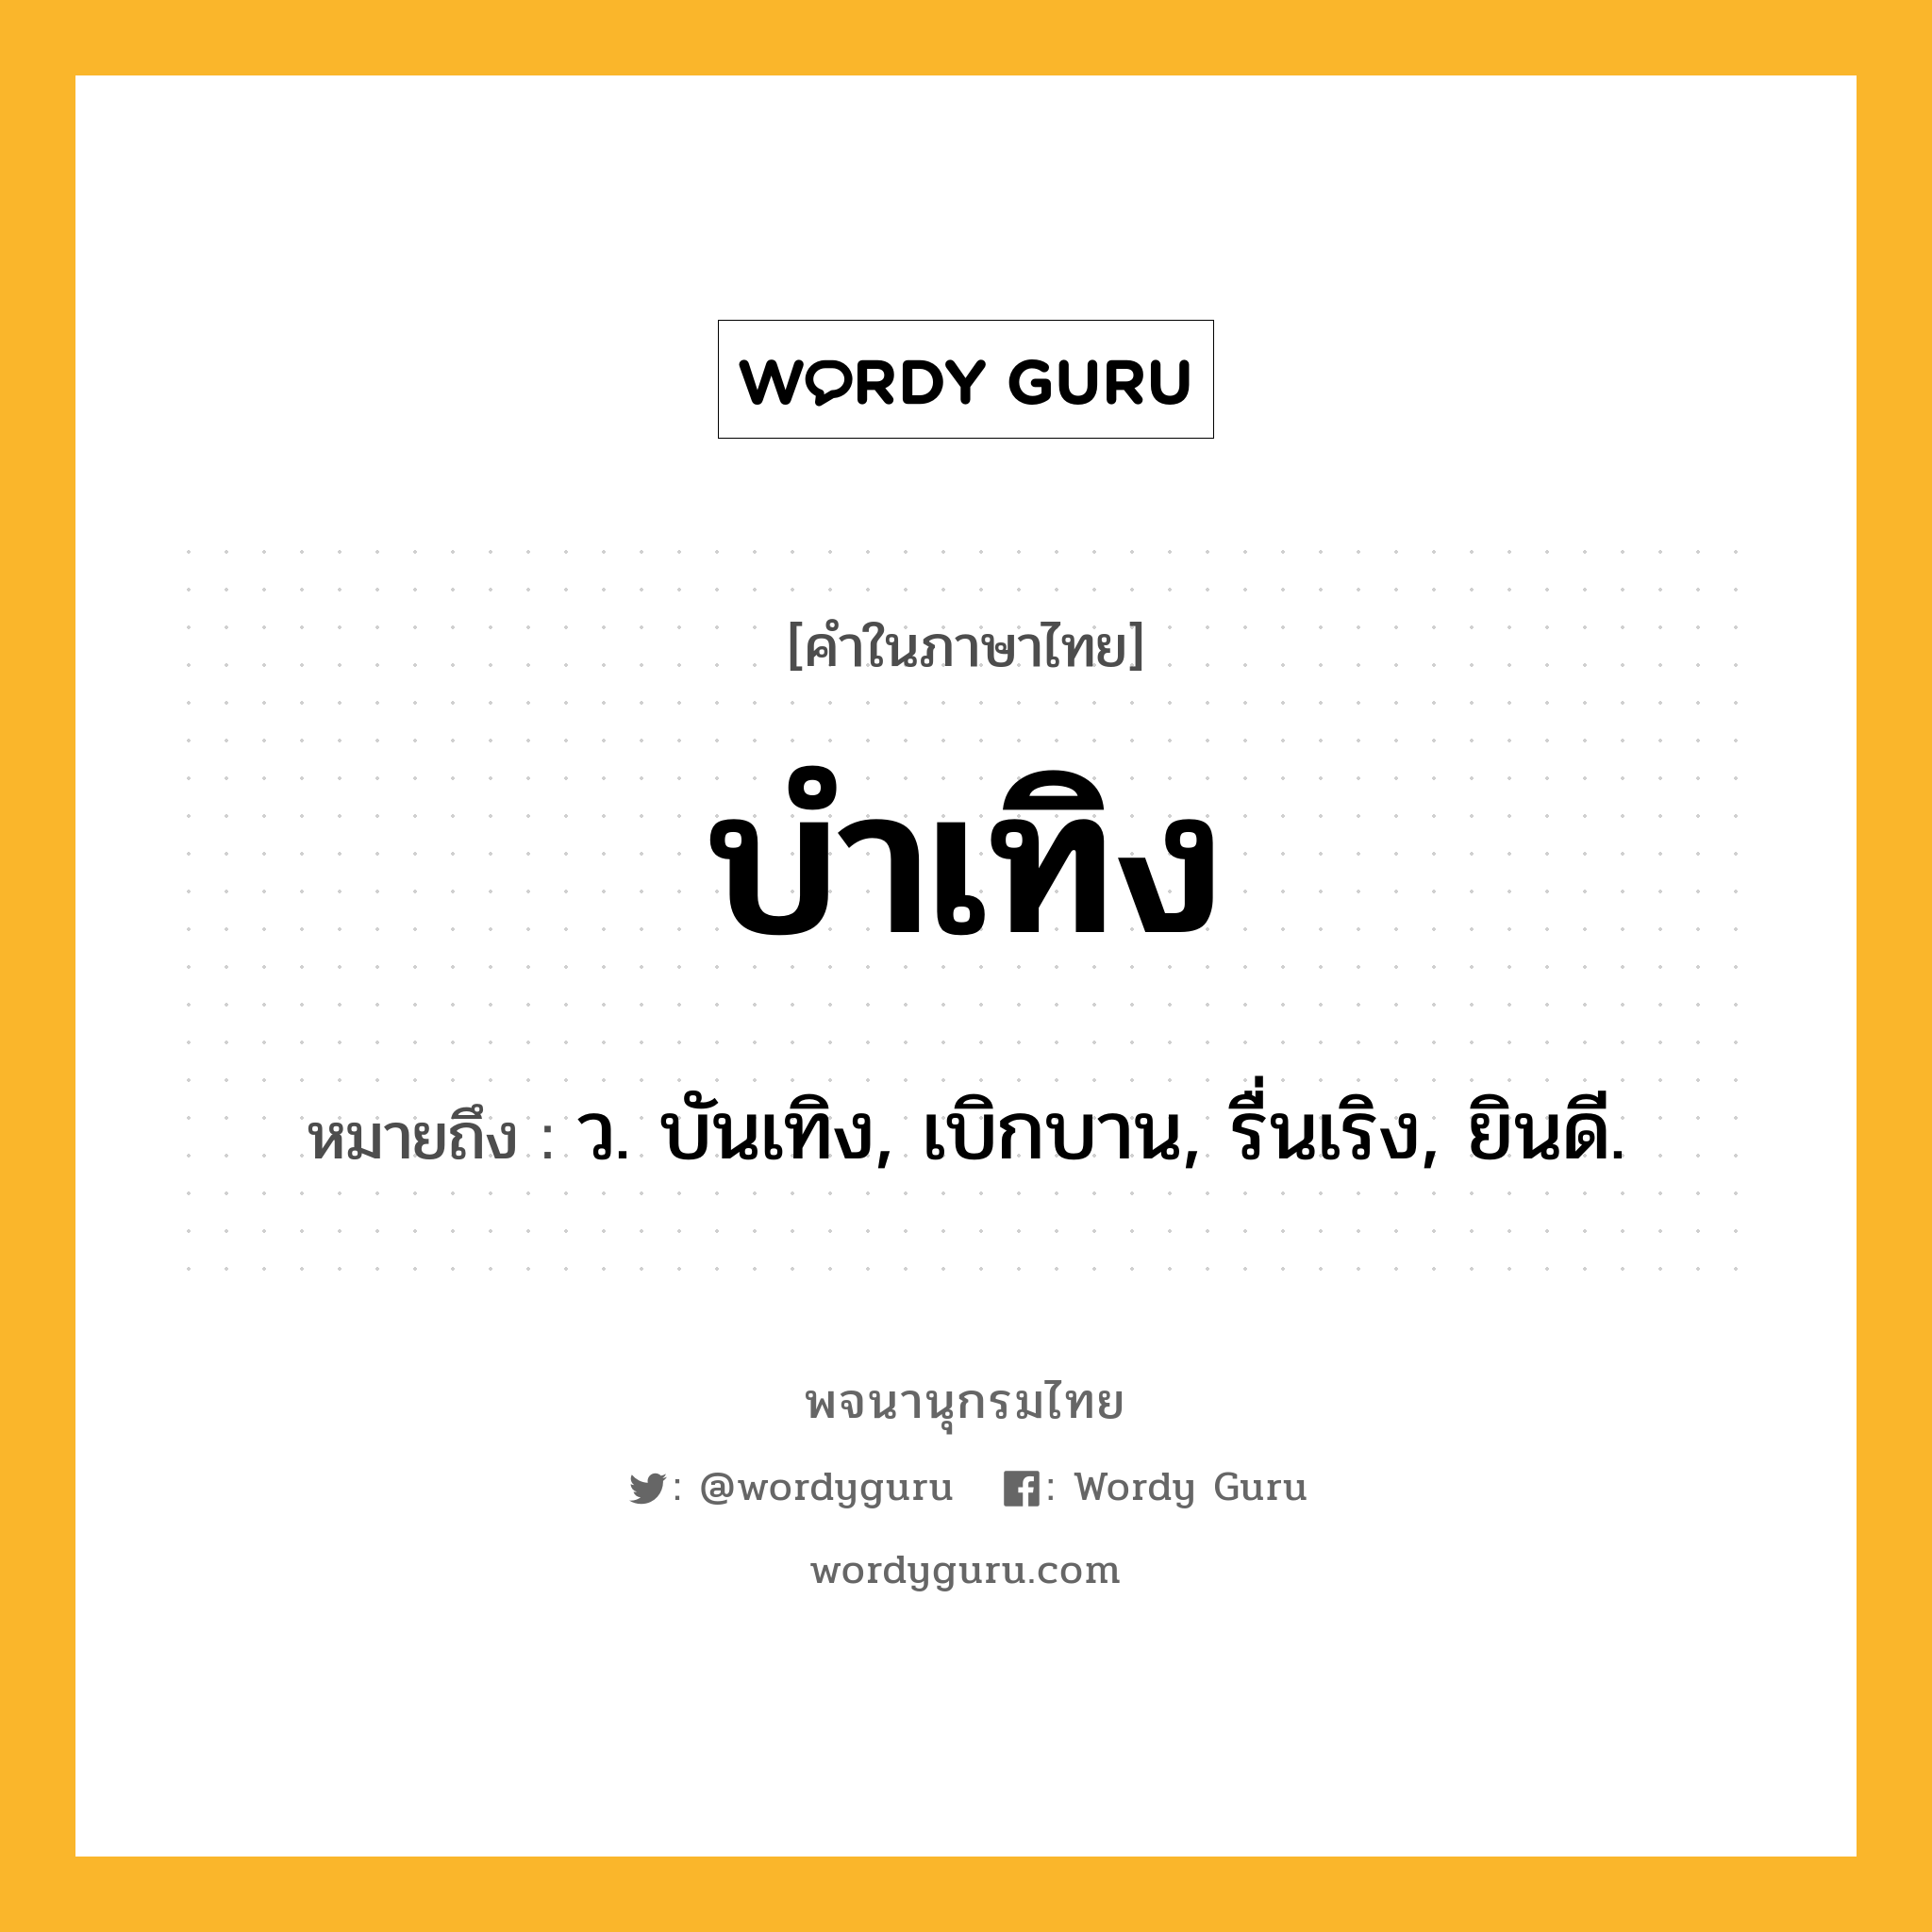 บำเทิง ความหมาย หมายถึงอะไร?, คำในภาษาไทย บำเทิง หมายถึง ว. บันเทิง, เบิกบาน, รื่นเริง, ยินดี.